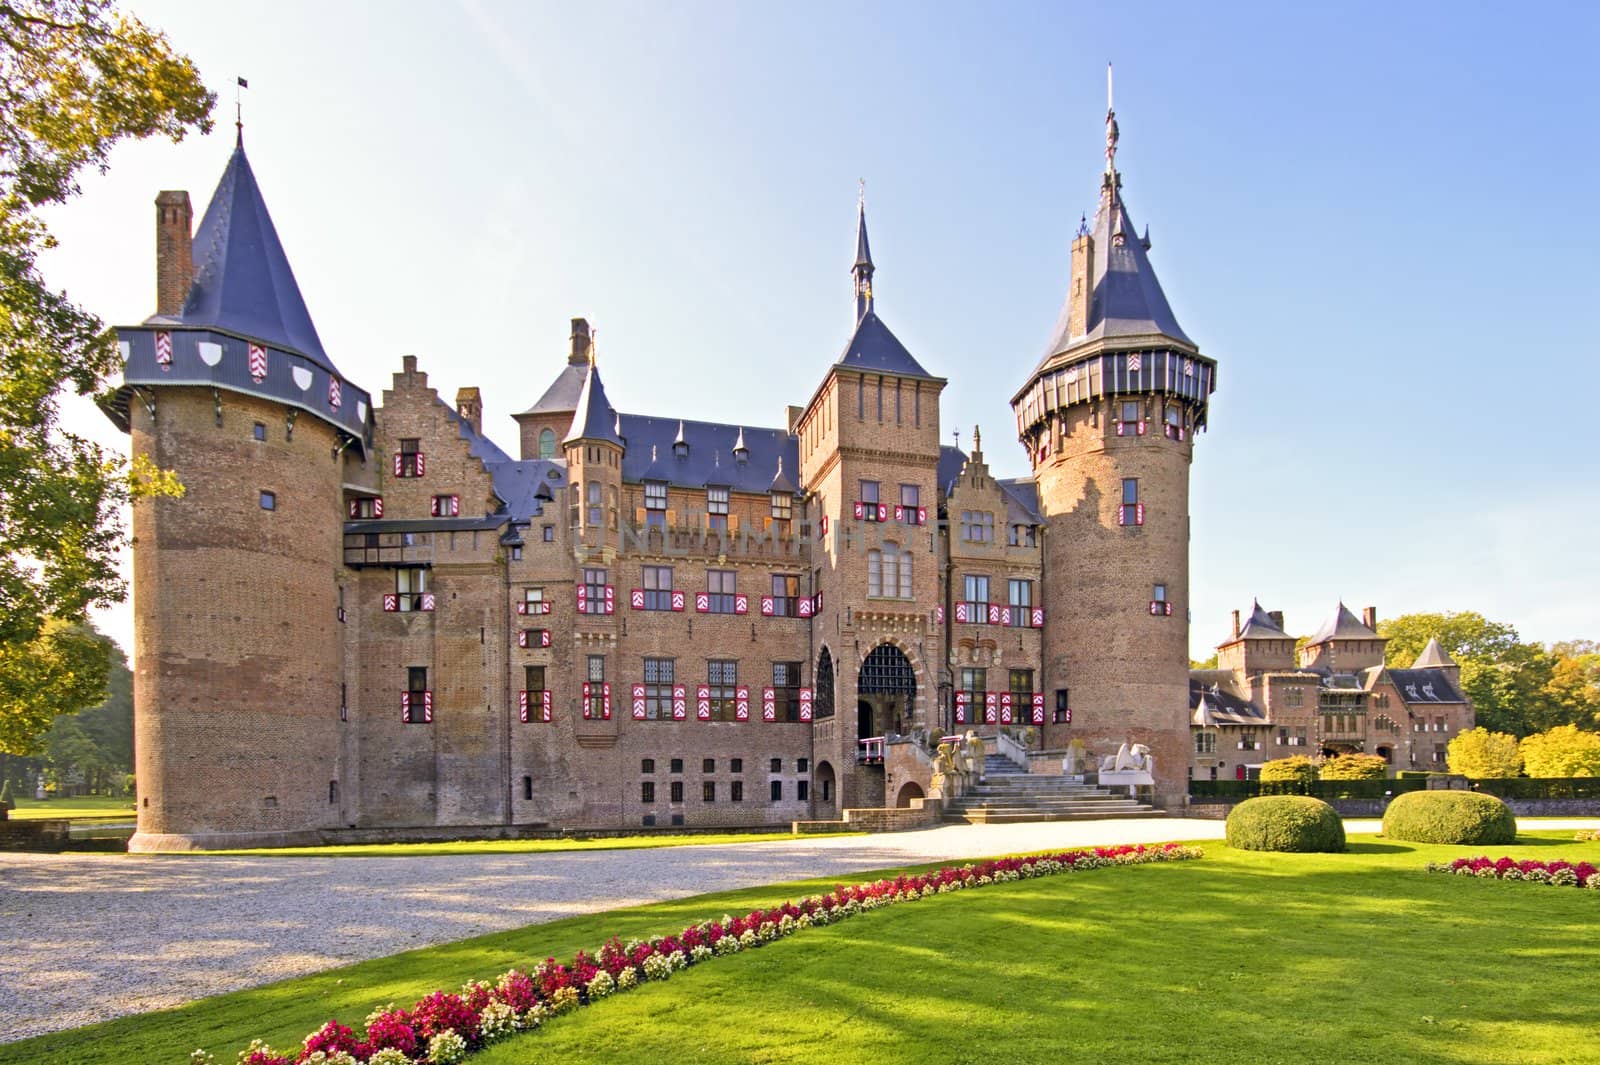 Medieval castle De Haar in the Netherlands